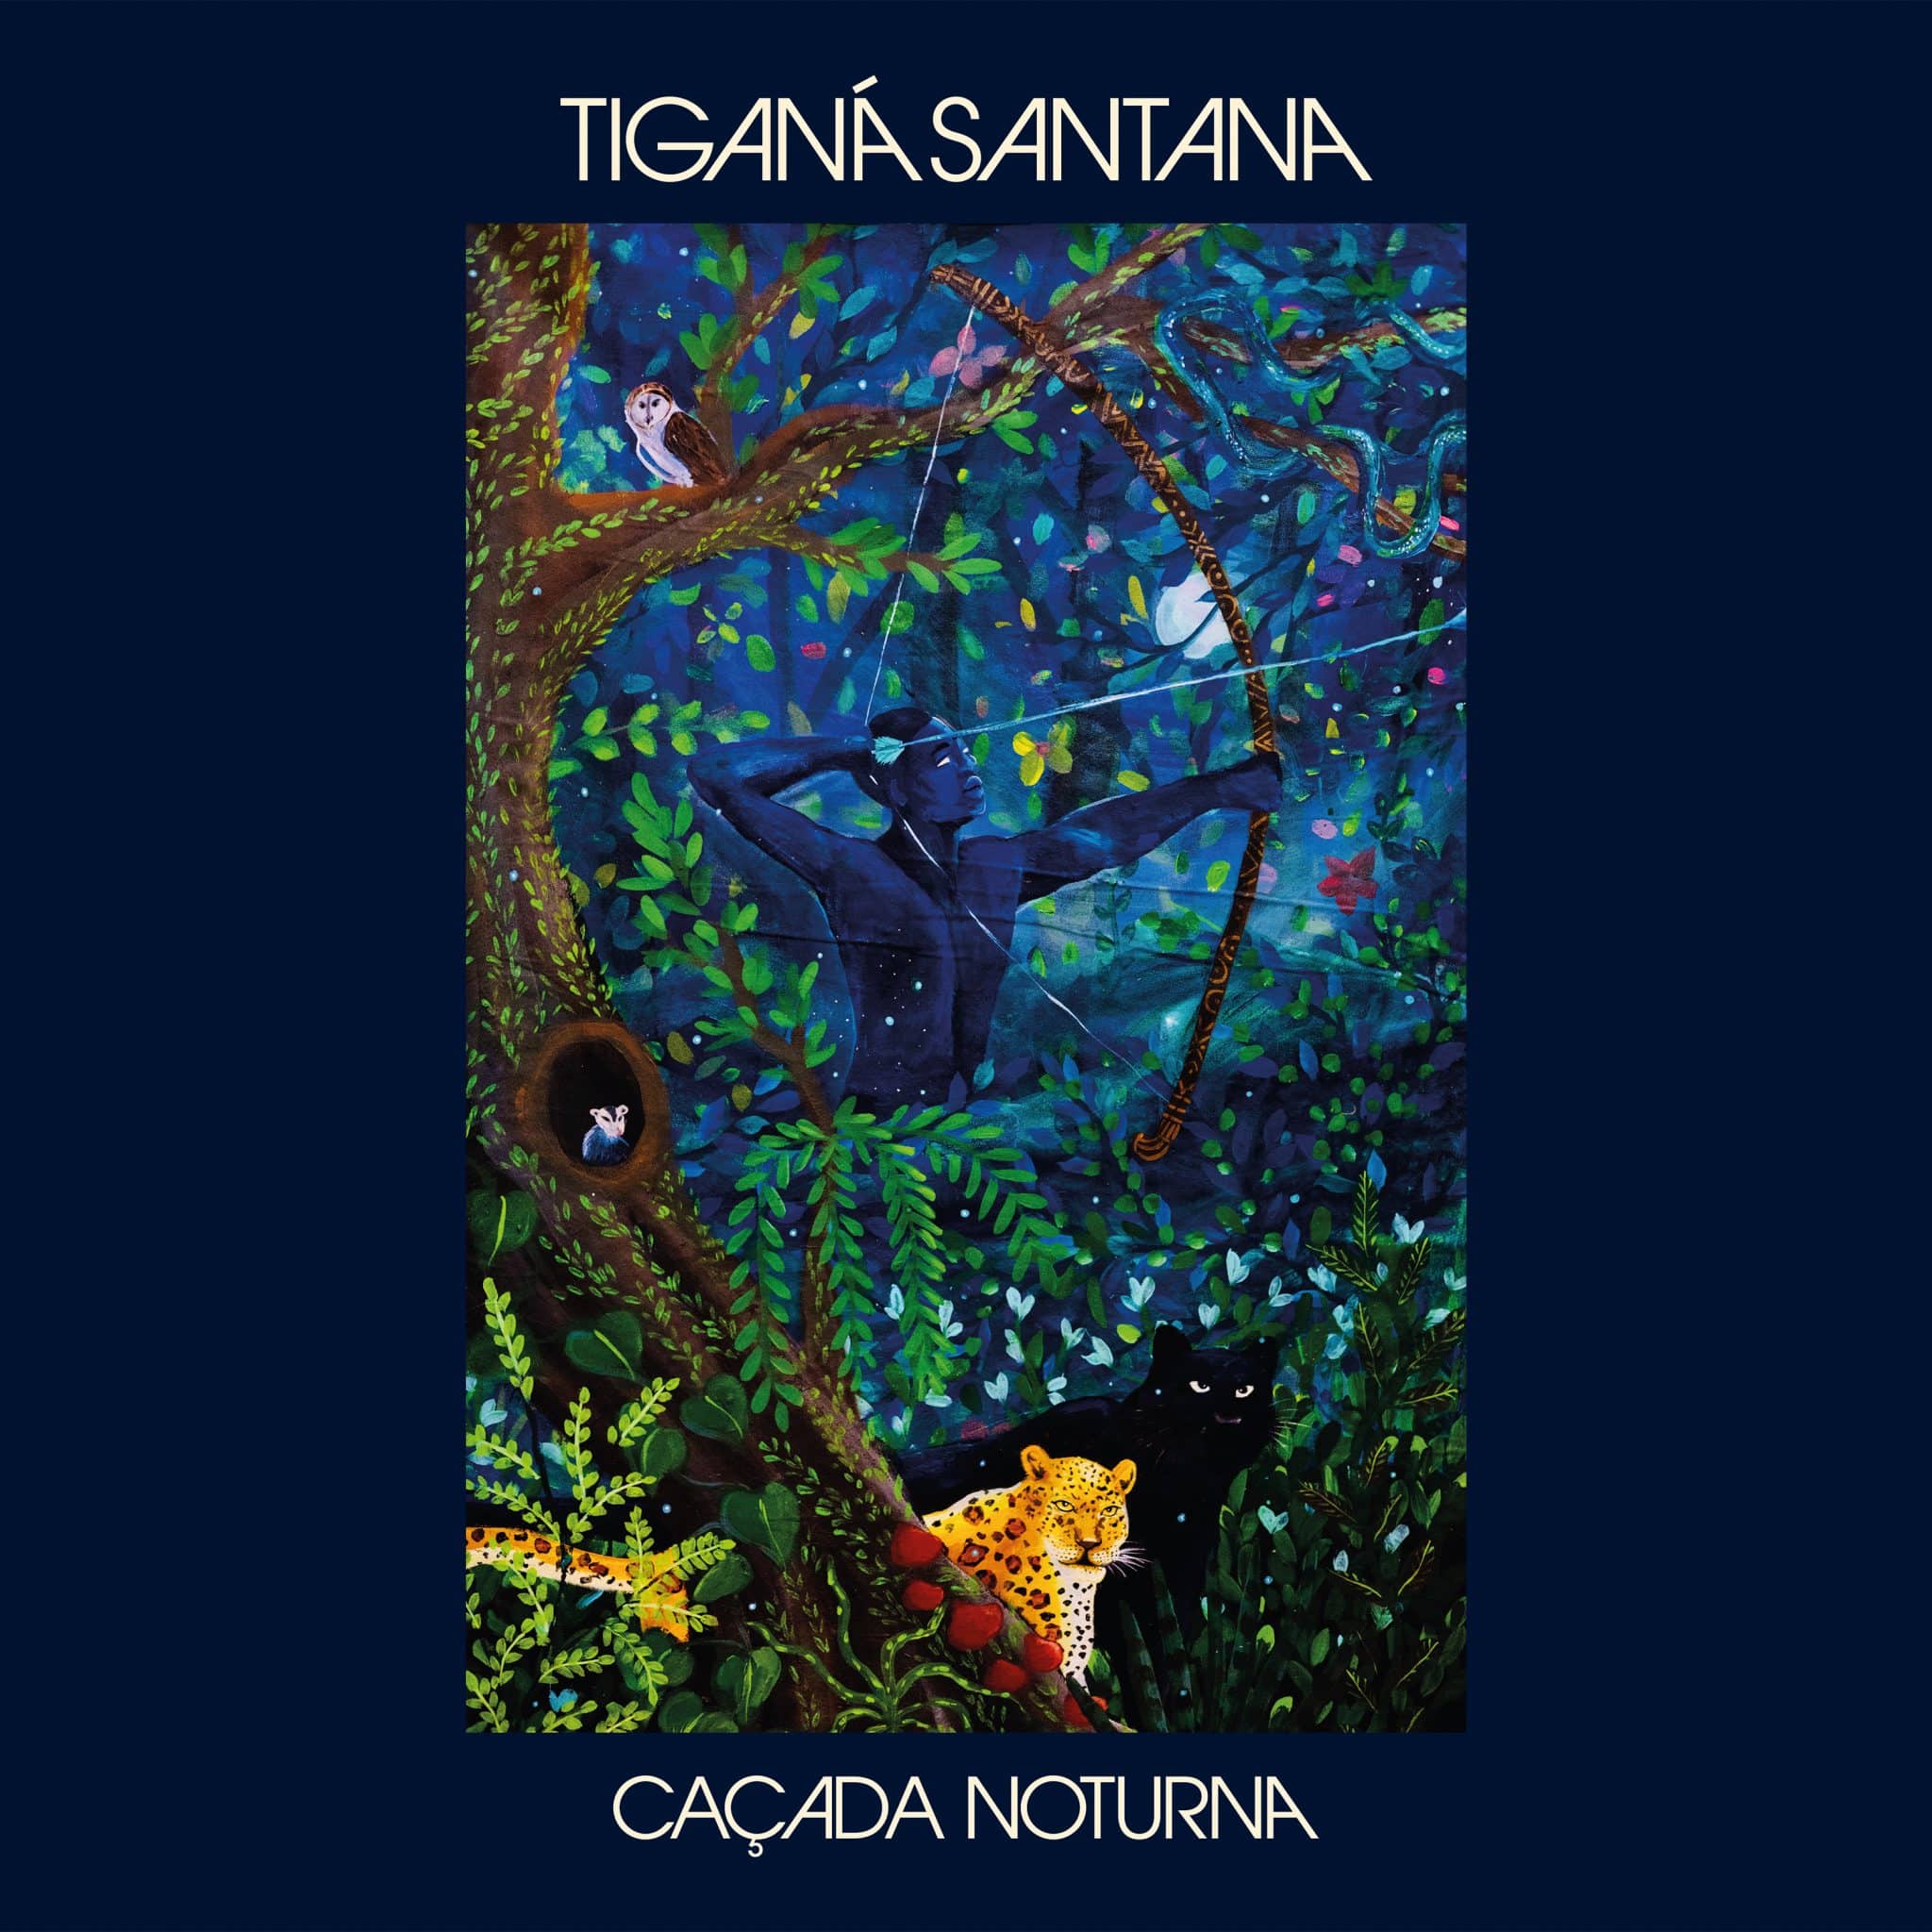 revistaprosaversoearte.com - Tiganá Santana lança o seu sétimo álbum 'Caçada Noturna'